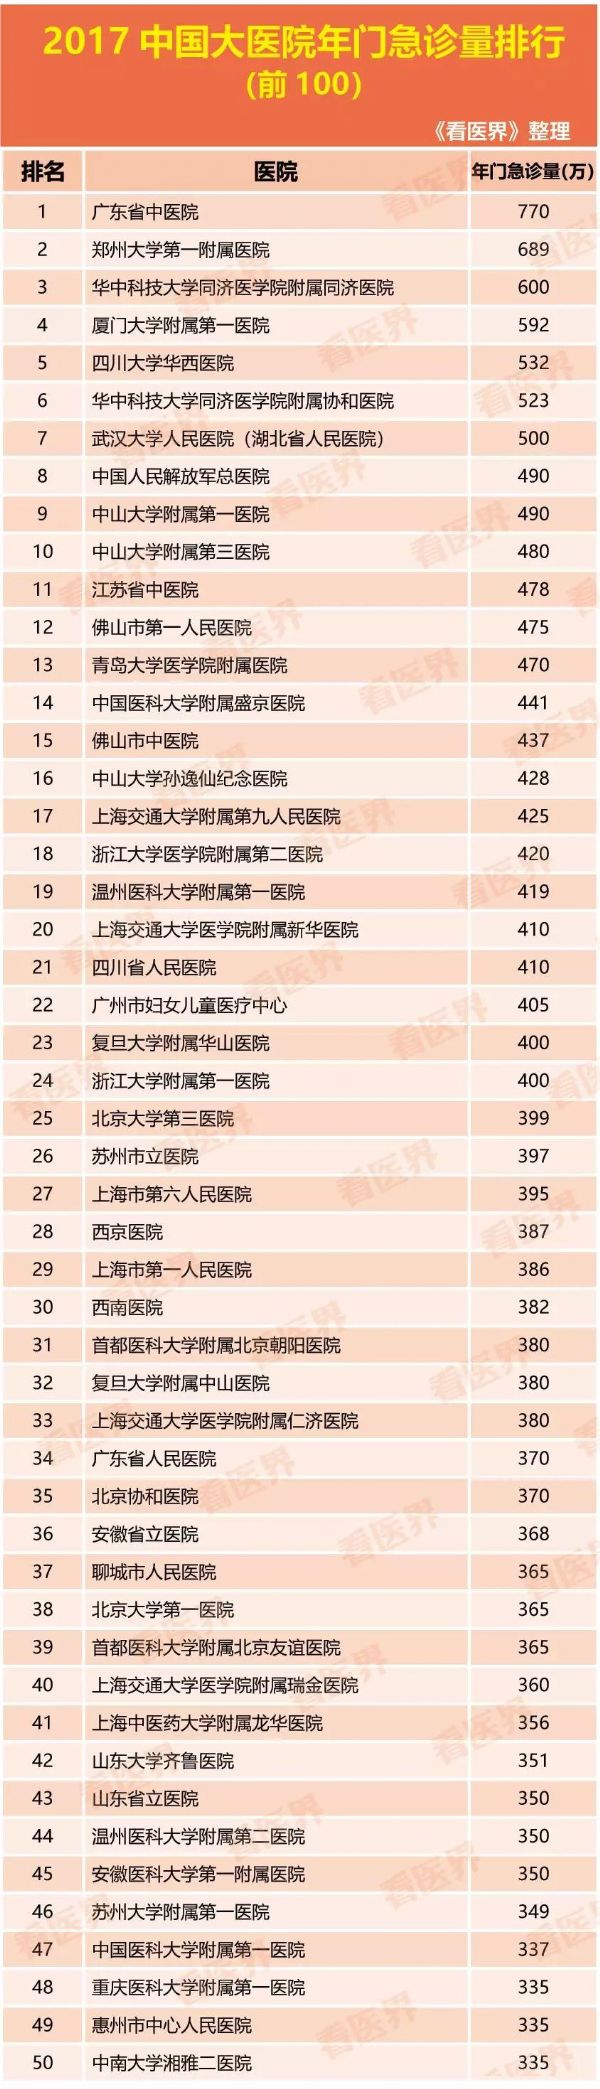 中国<font color="red">门诊量</font>最大的100家医院